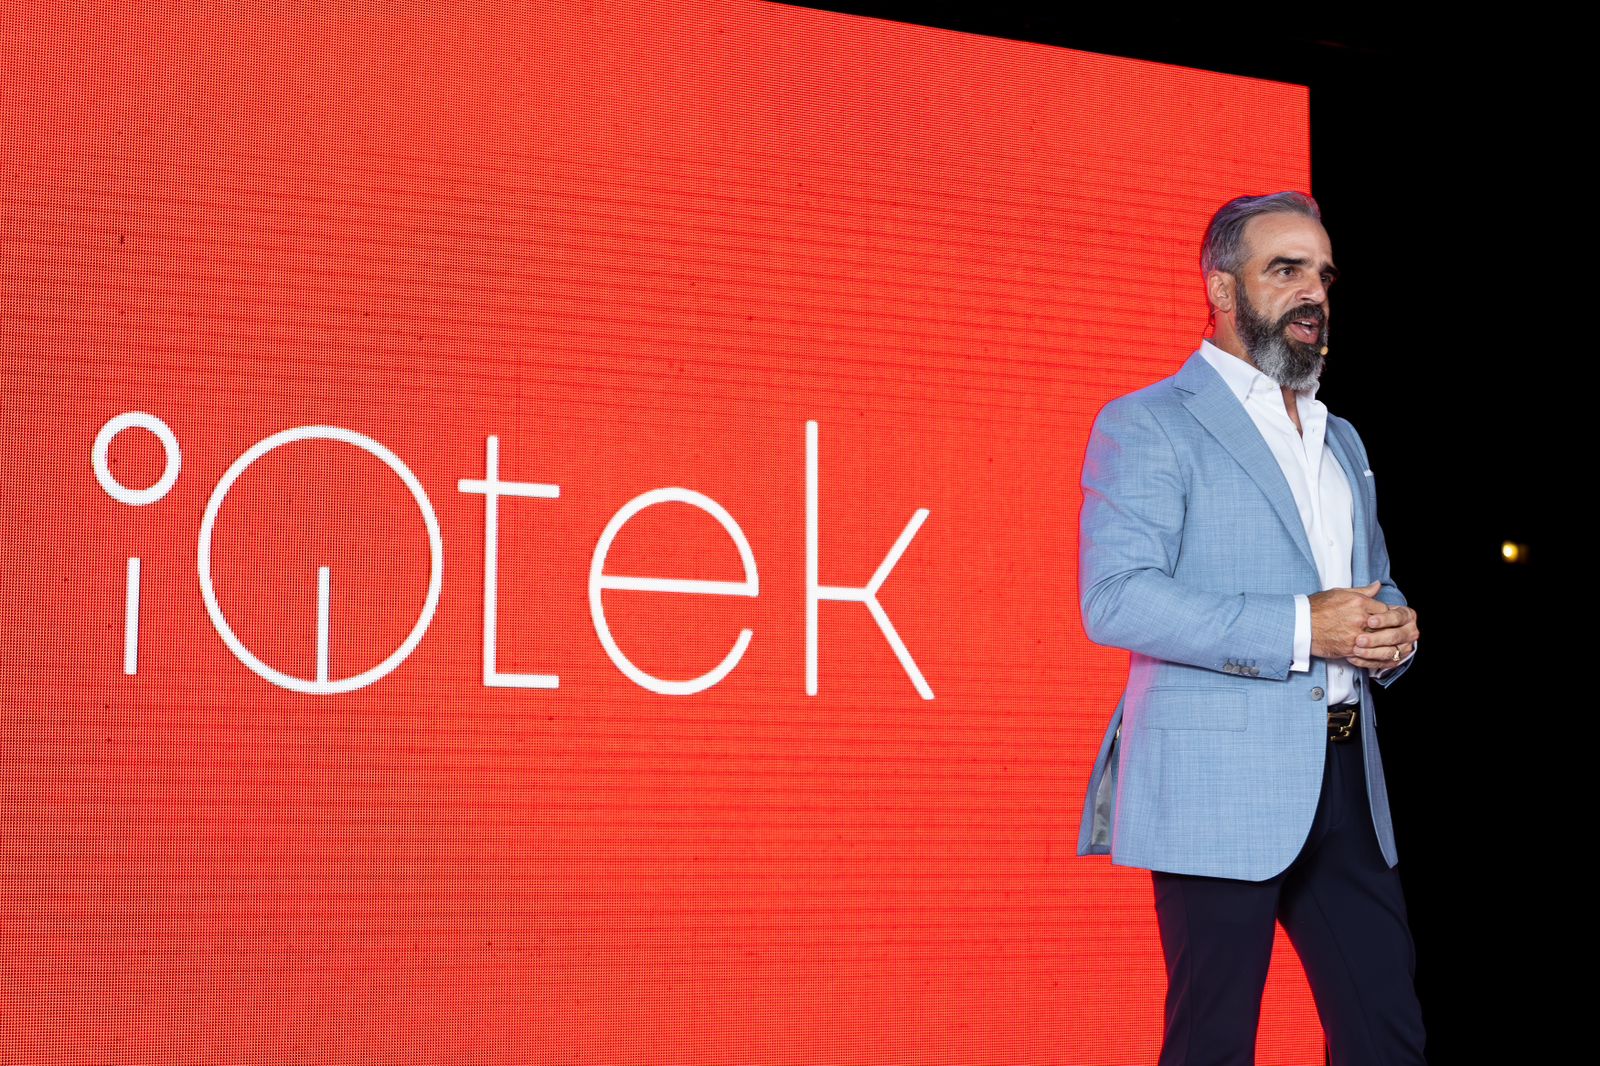 iQtek revela innovaciones y amplía capacidades de servicios - Periódico elCaribe